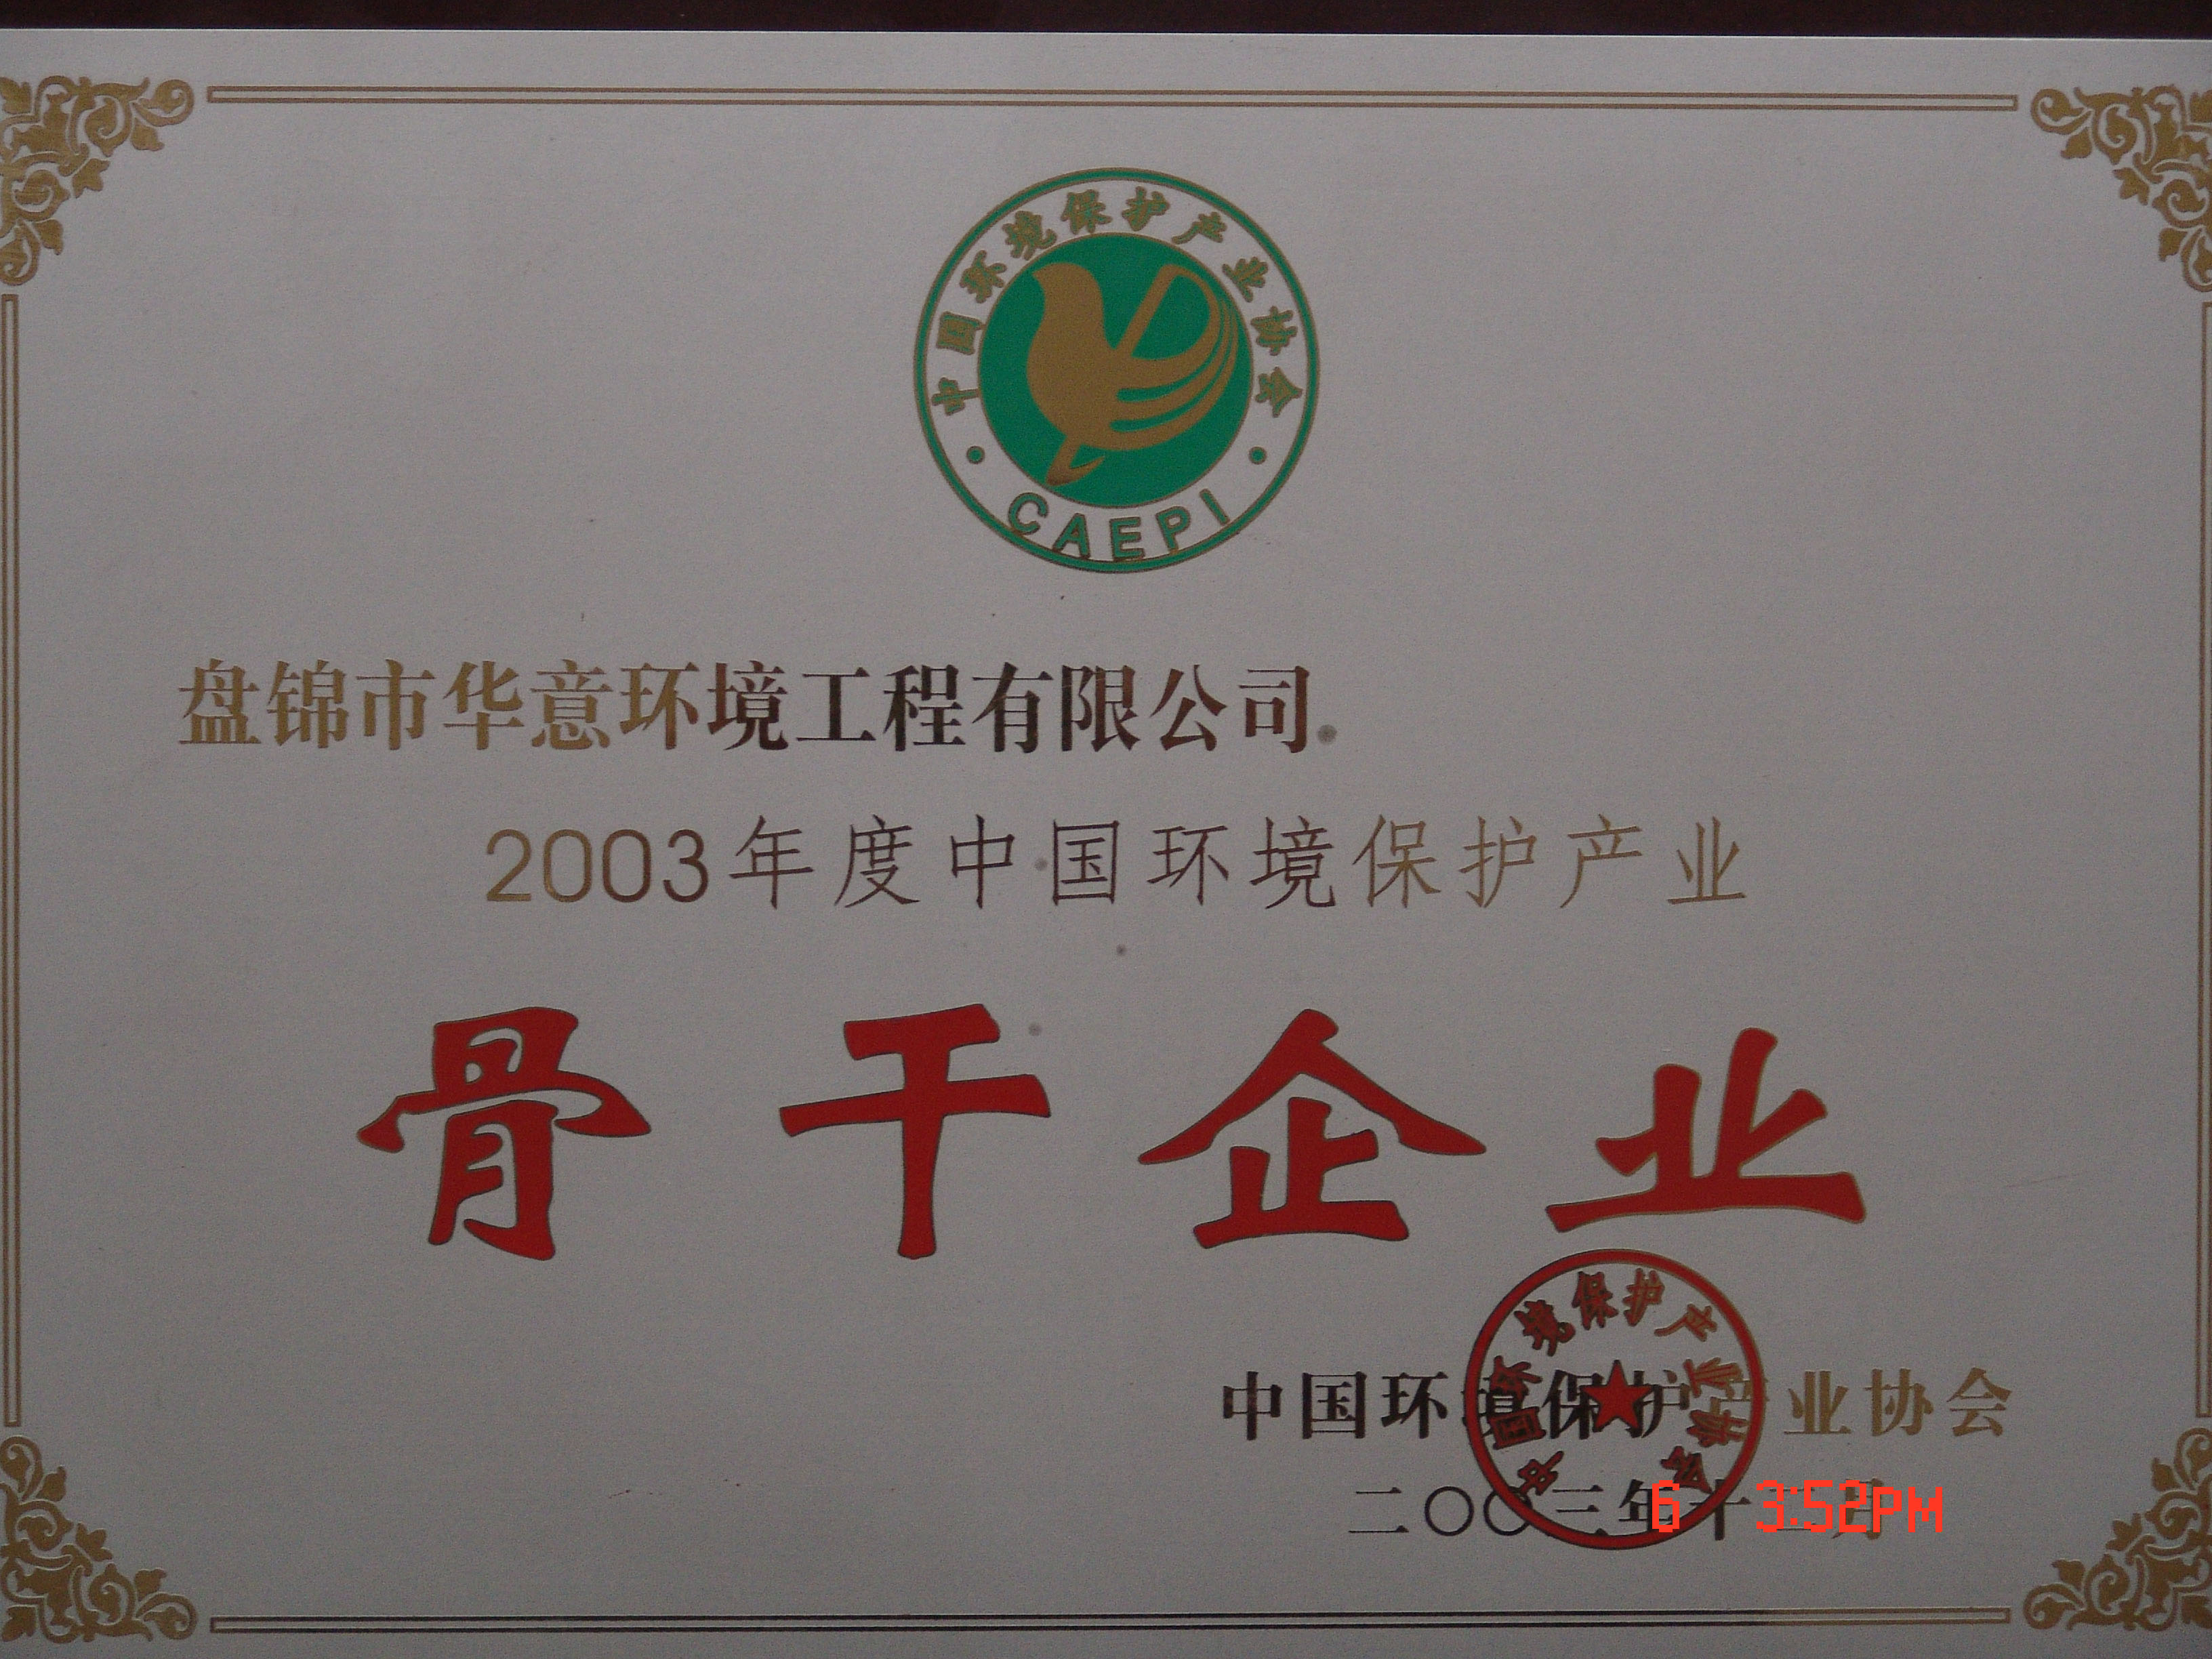 5中国环境保护产业骨干企业.JPG